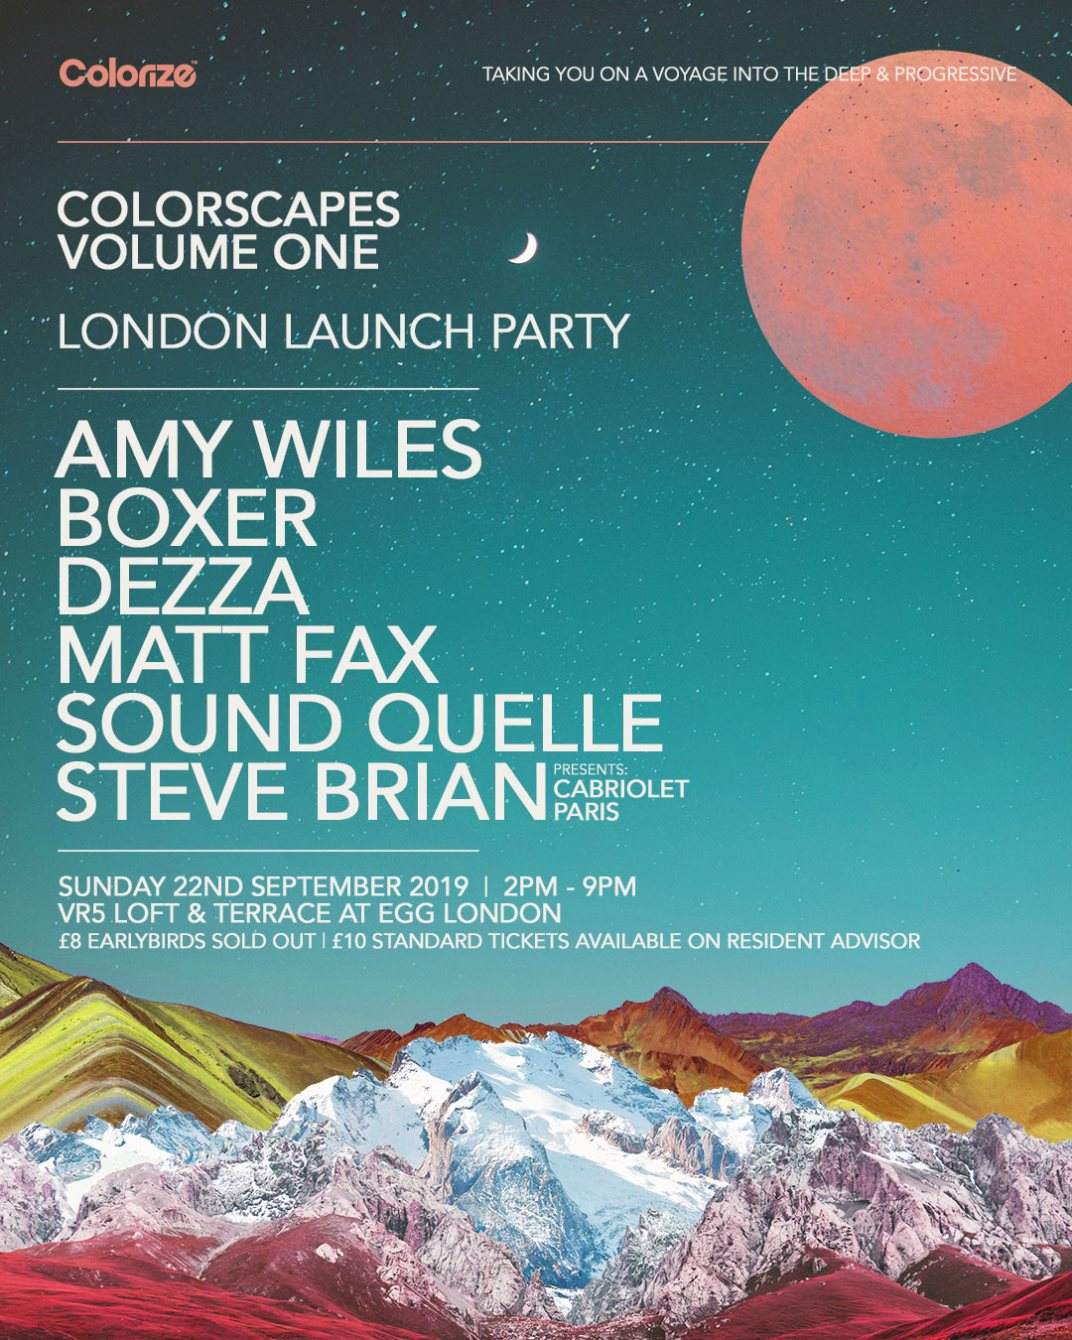 Colorize - Colorscapes Vol One Launch Party, London - Página frontal